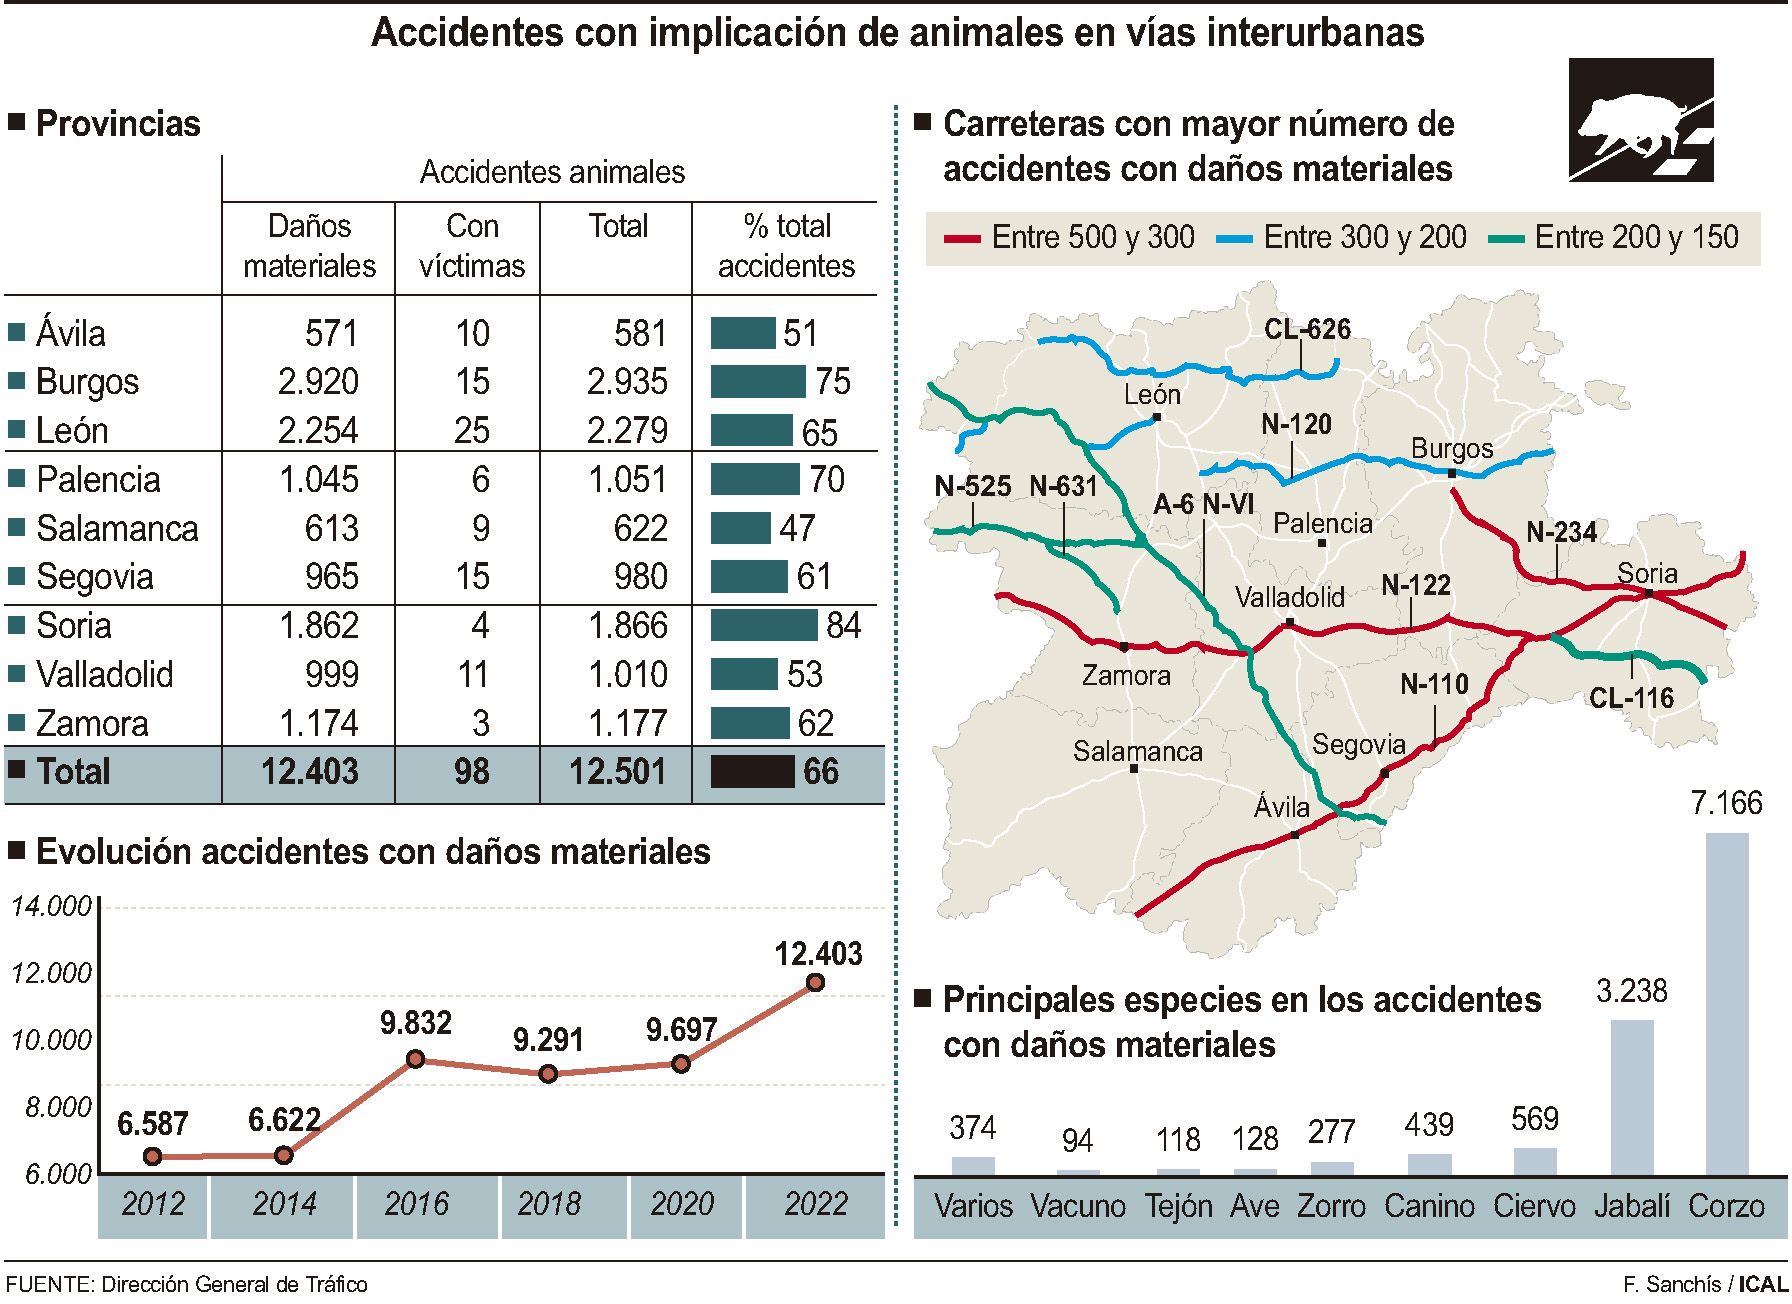 Accidentes con implicación de animales en vías interurbanas (15cmx11cm)